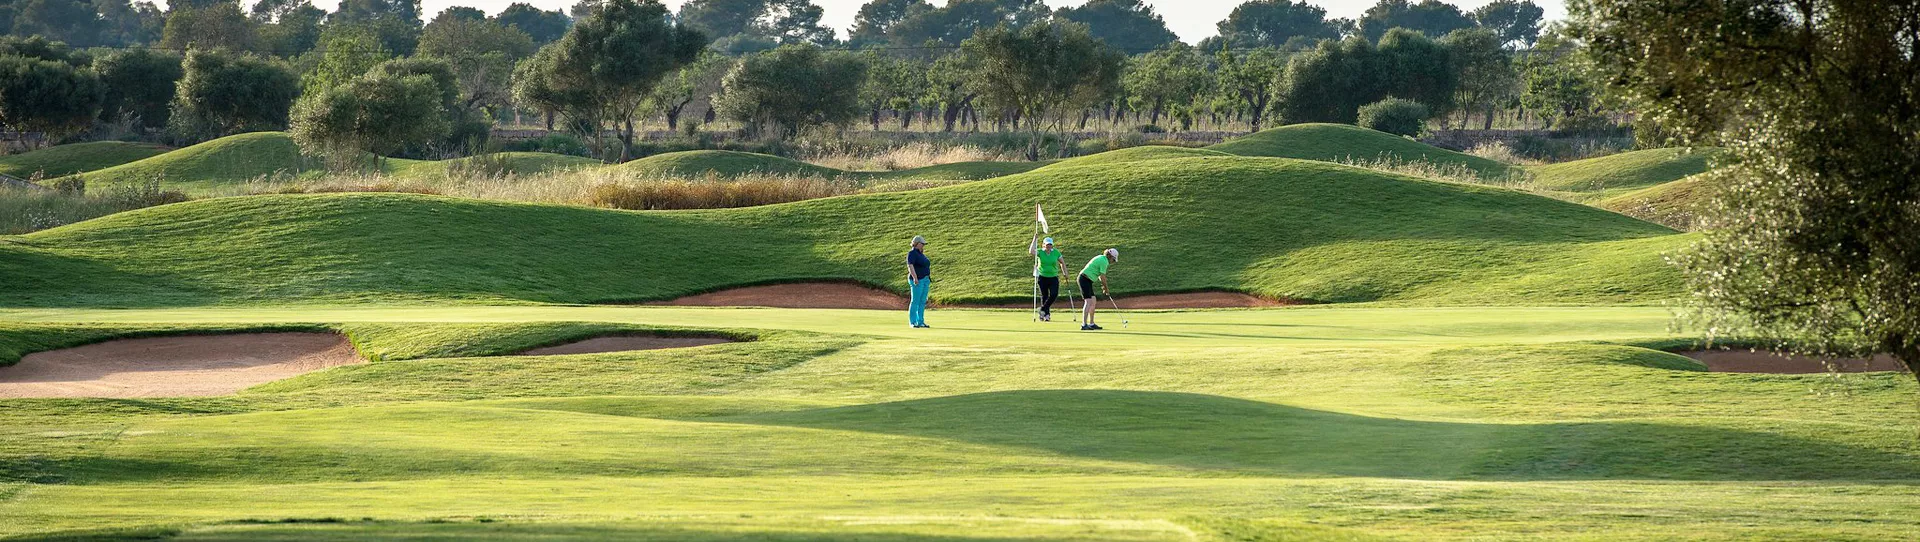 Spain golf courses - Son Antem Golf Course West - Photo 3